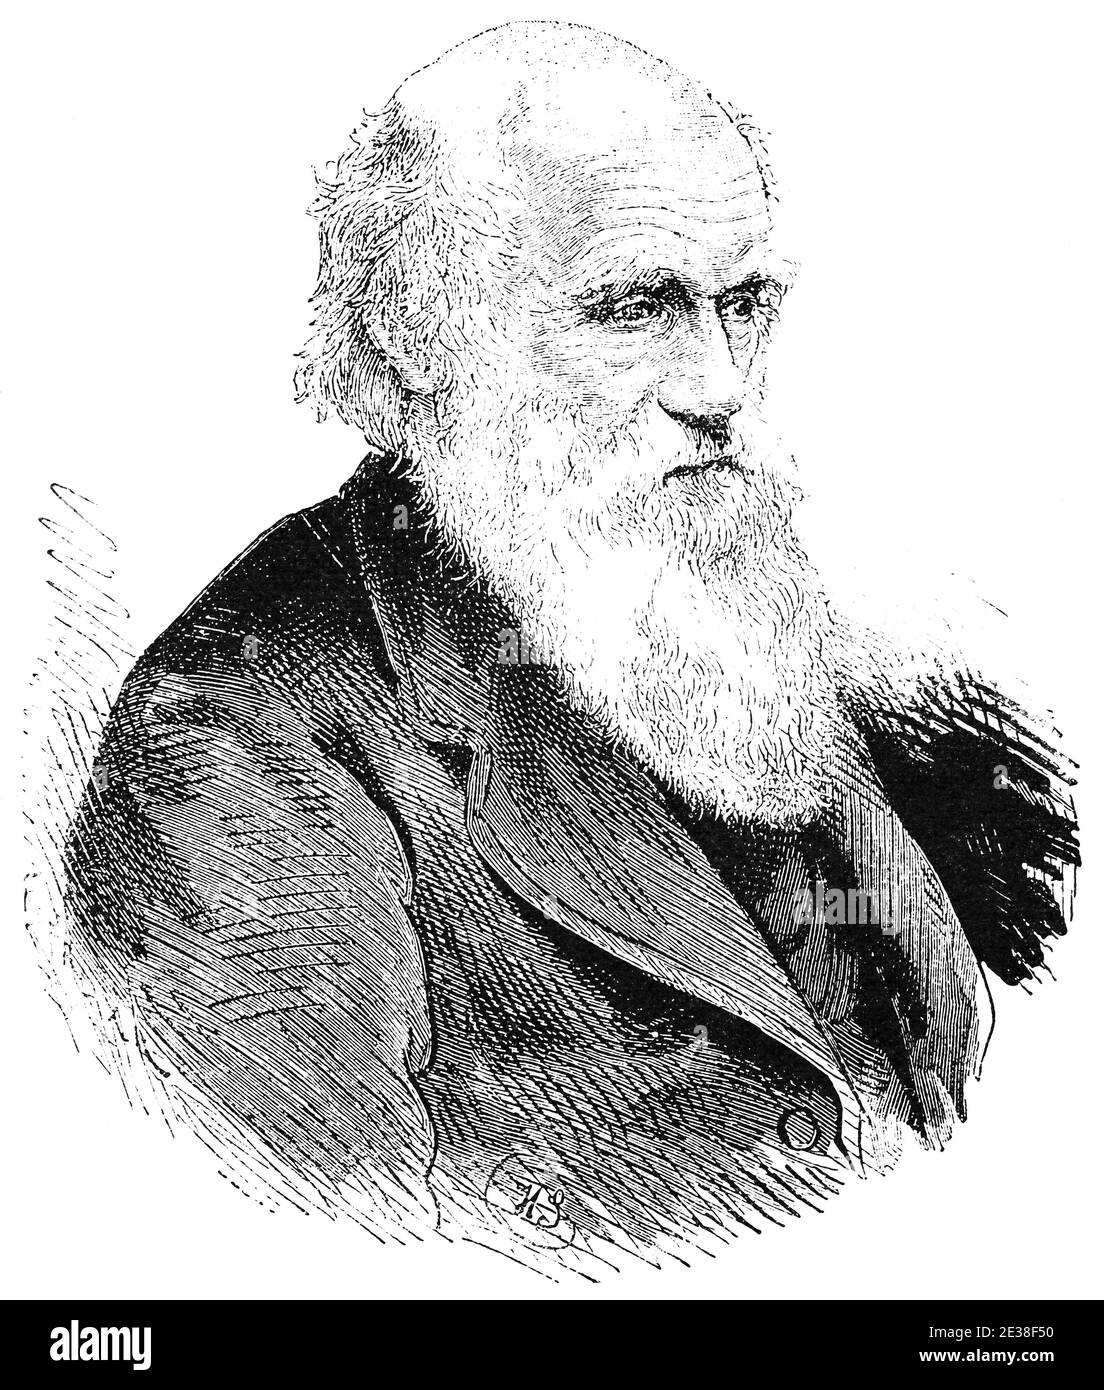 Porträt von Charles Robert Darwin - ein englischer Naturforscher, Geologe und Biologe, am besten bekannt für seine Beiträge zur Wissenschaft der Evolution. Illustration des 19. Jahrhunderts. Weißer Hintergrund. Stockfoto